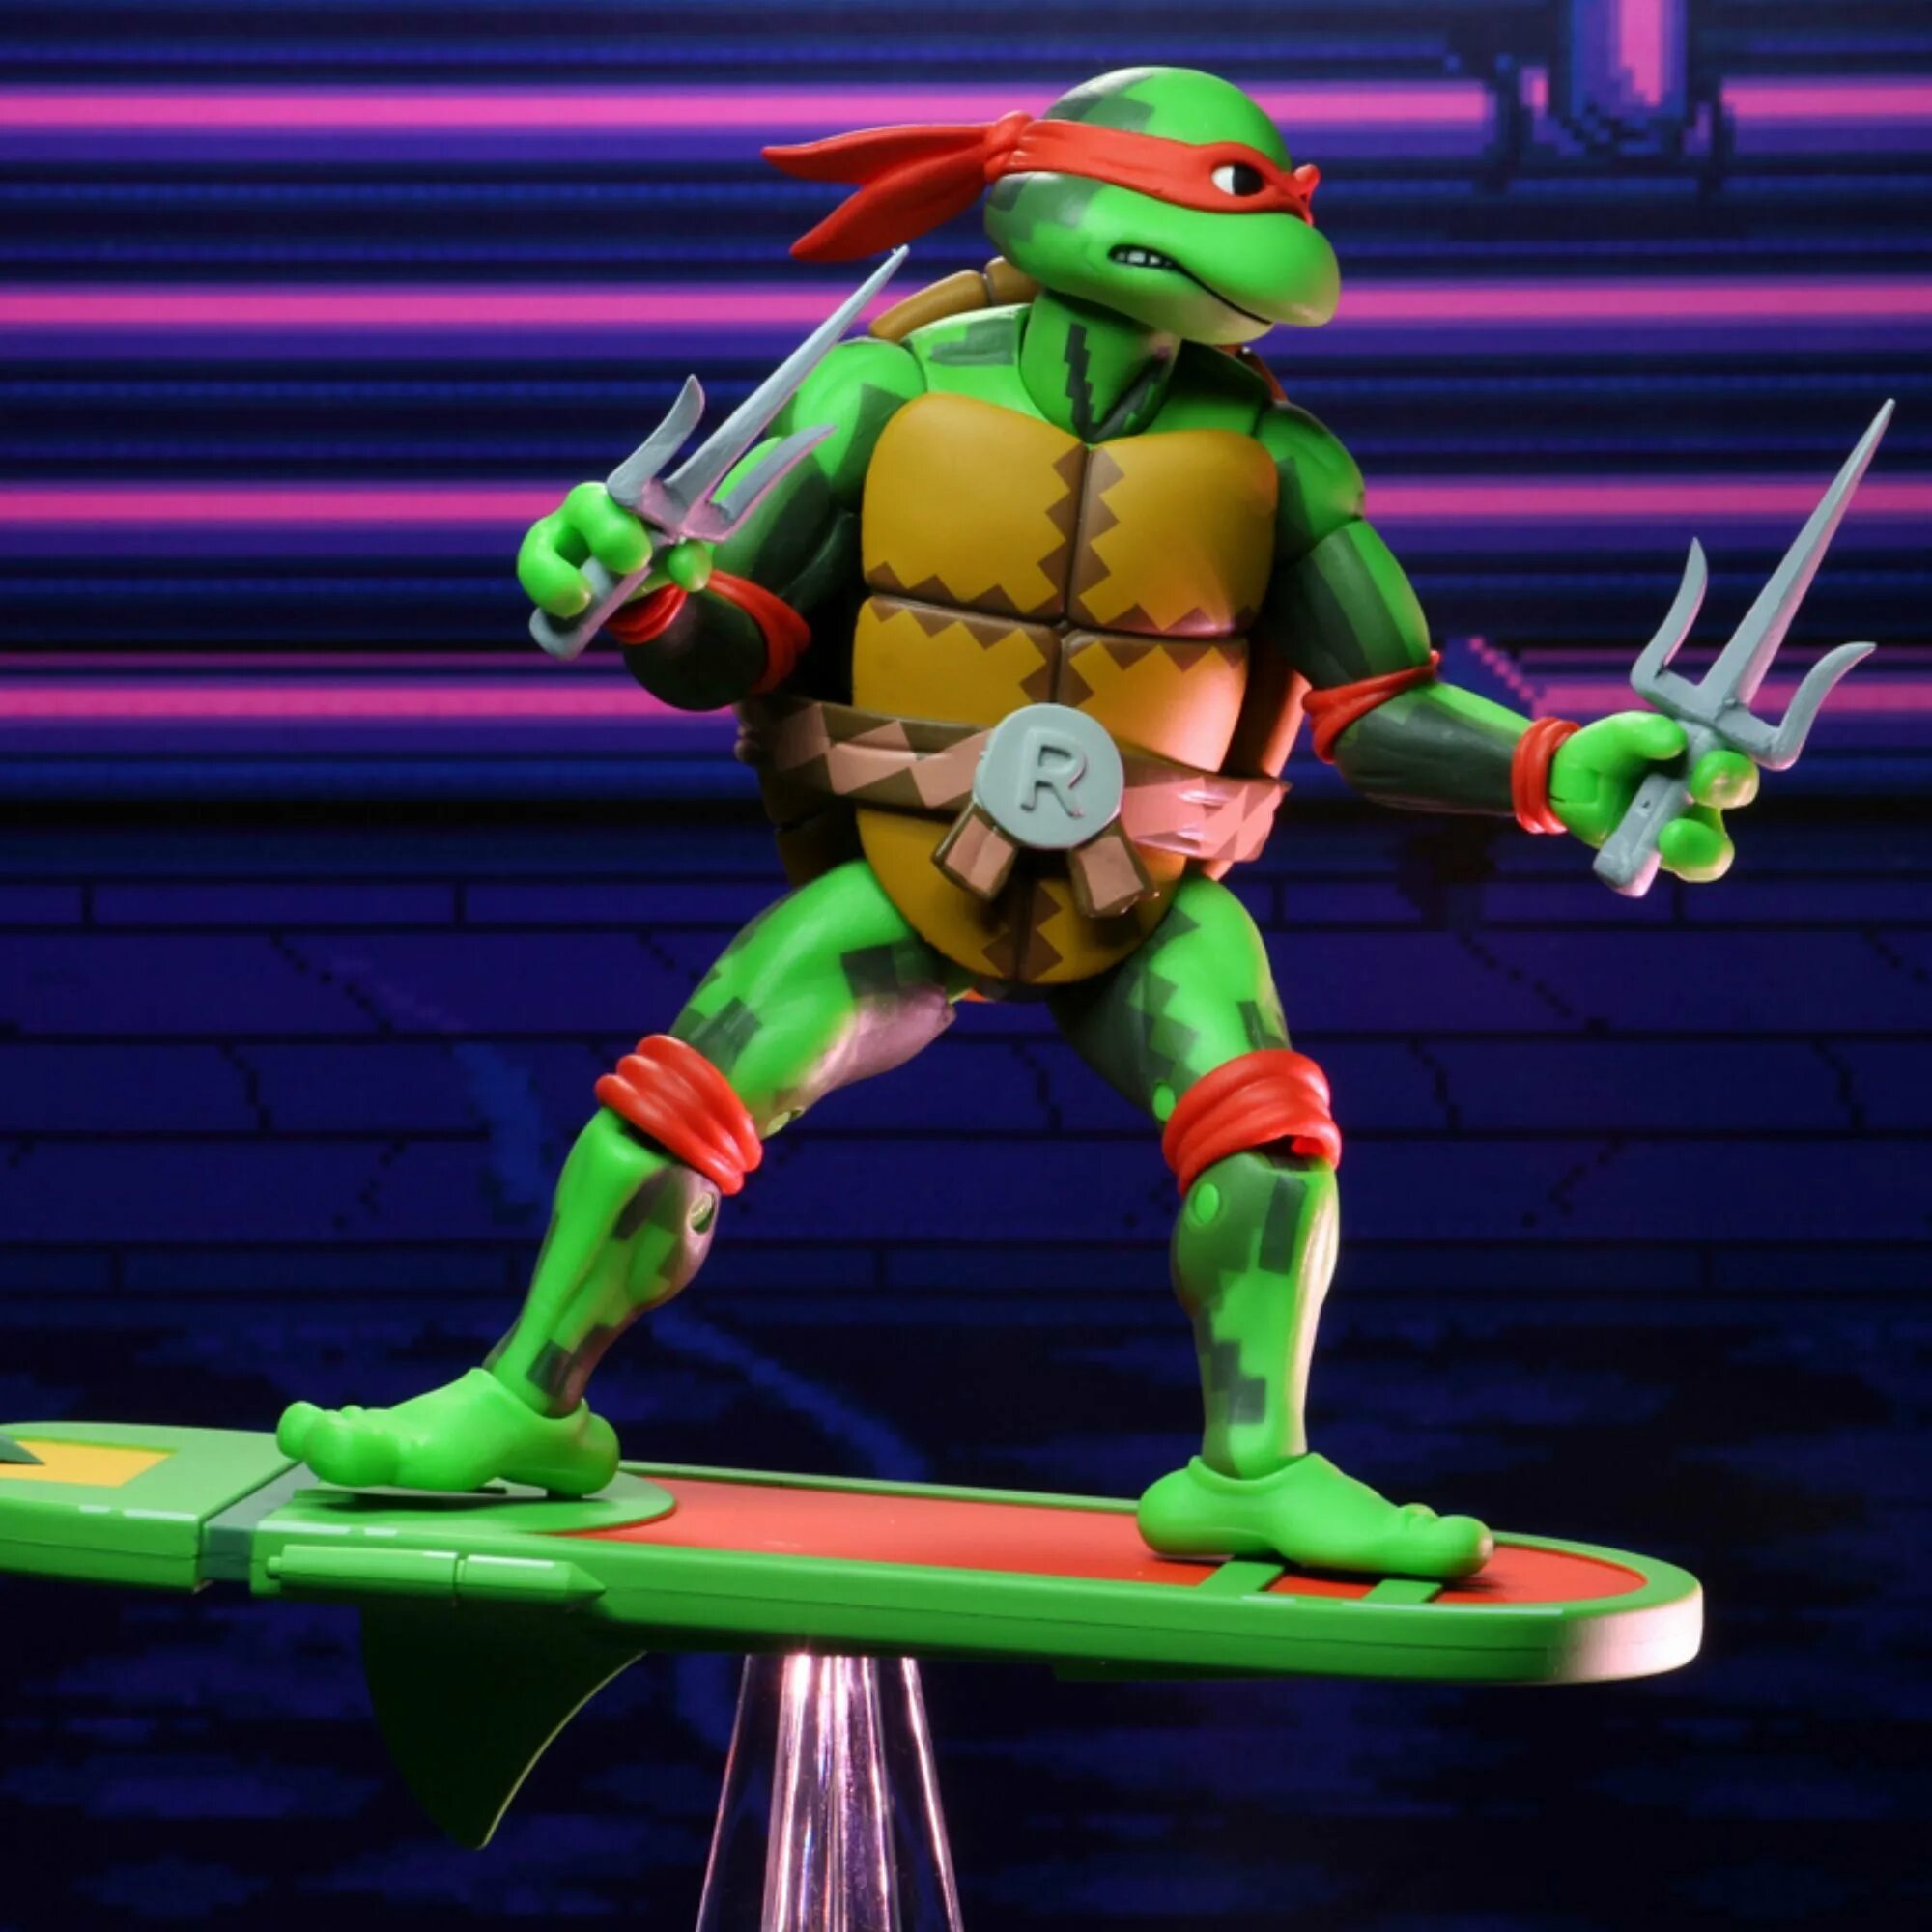 NECA TMNT Черепашки ниндзя. Teenage Mutant Ninja Turtles in time. Teenage Mutant Ninja Turtles Turtles in time. Tmnt collection